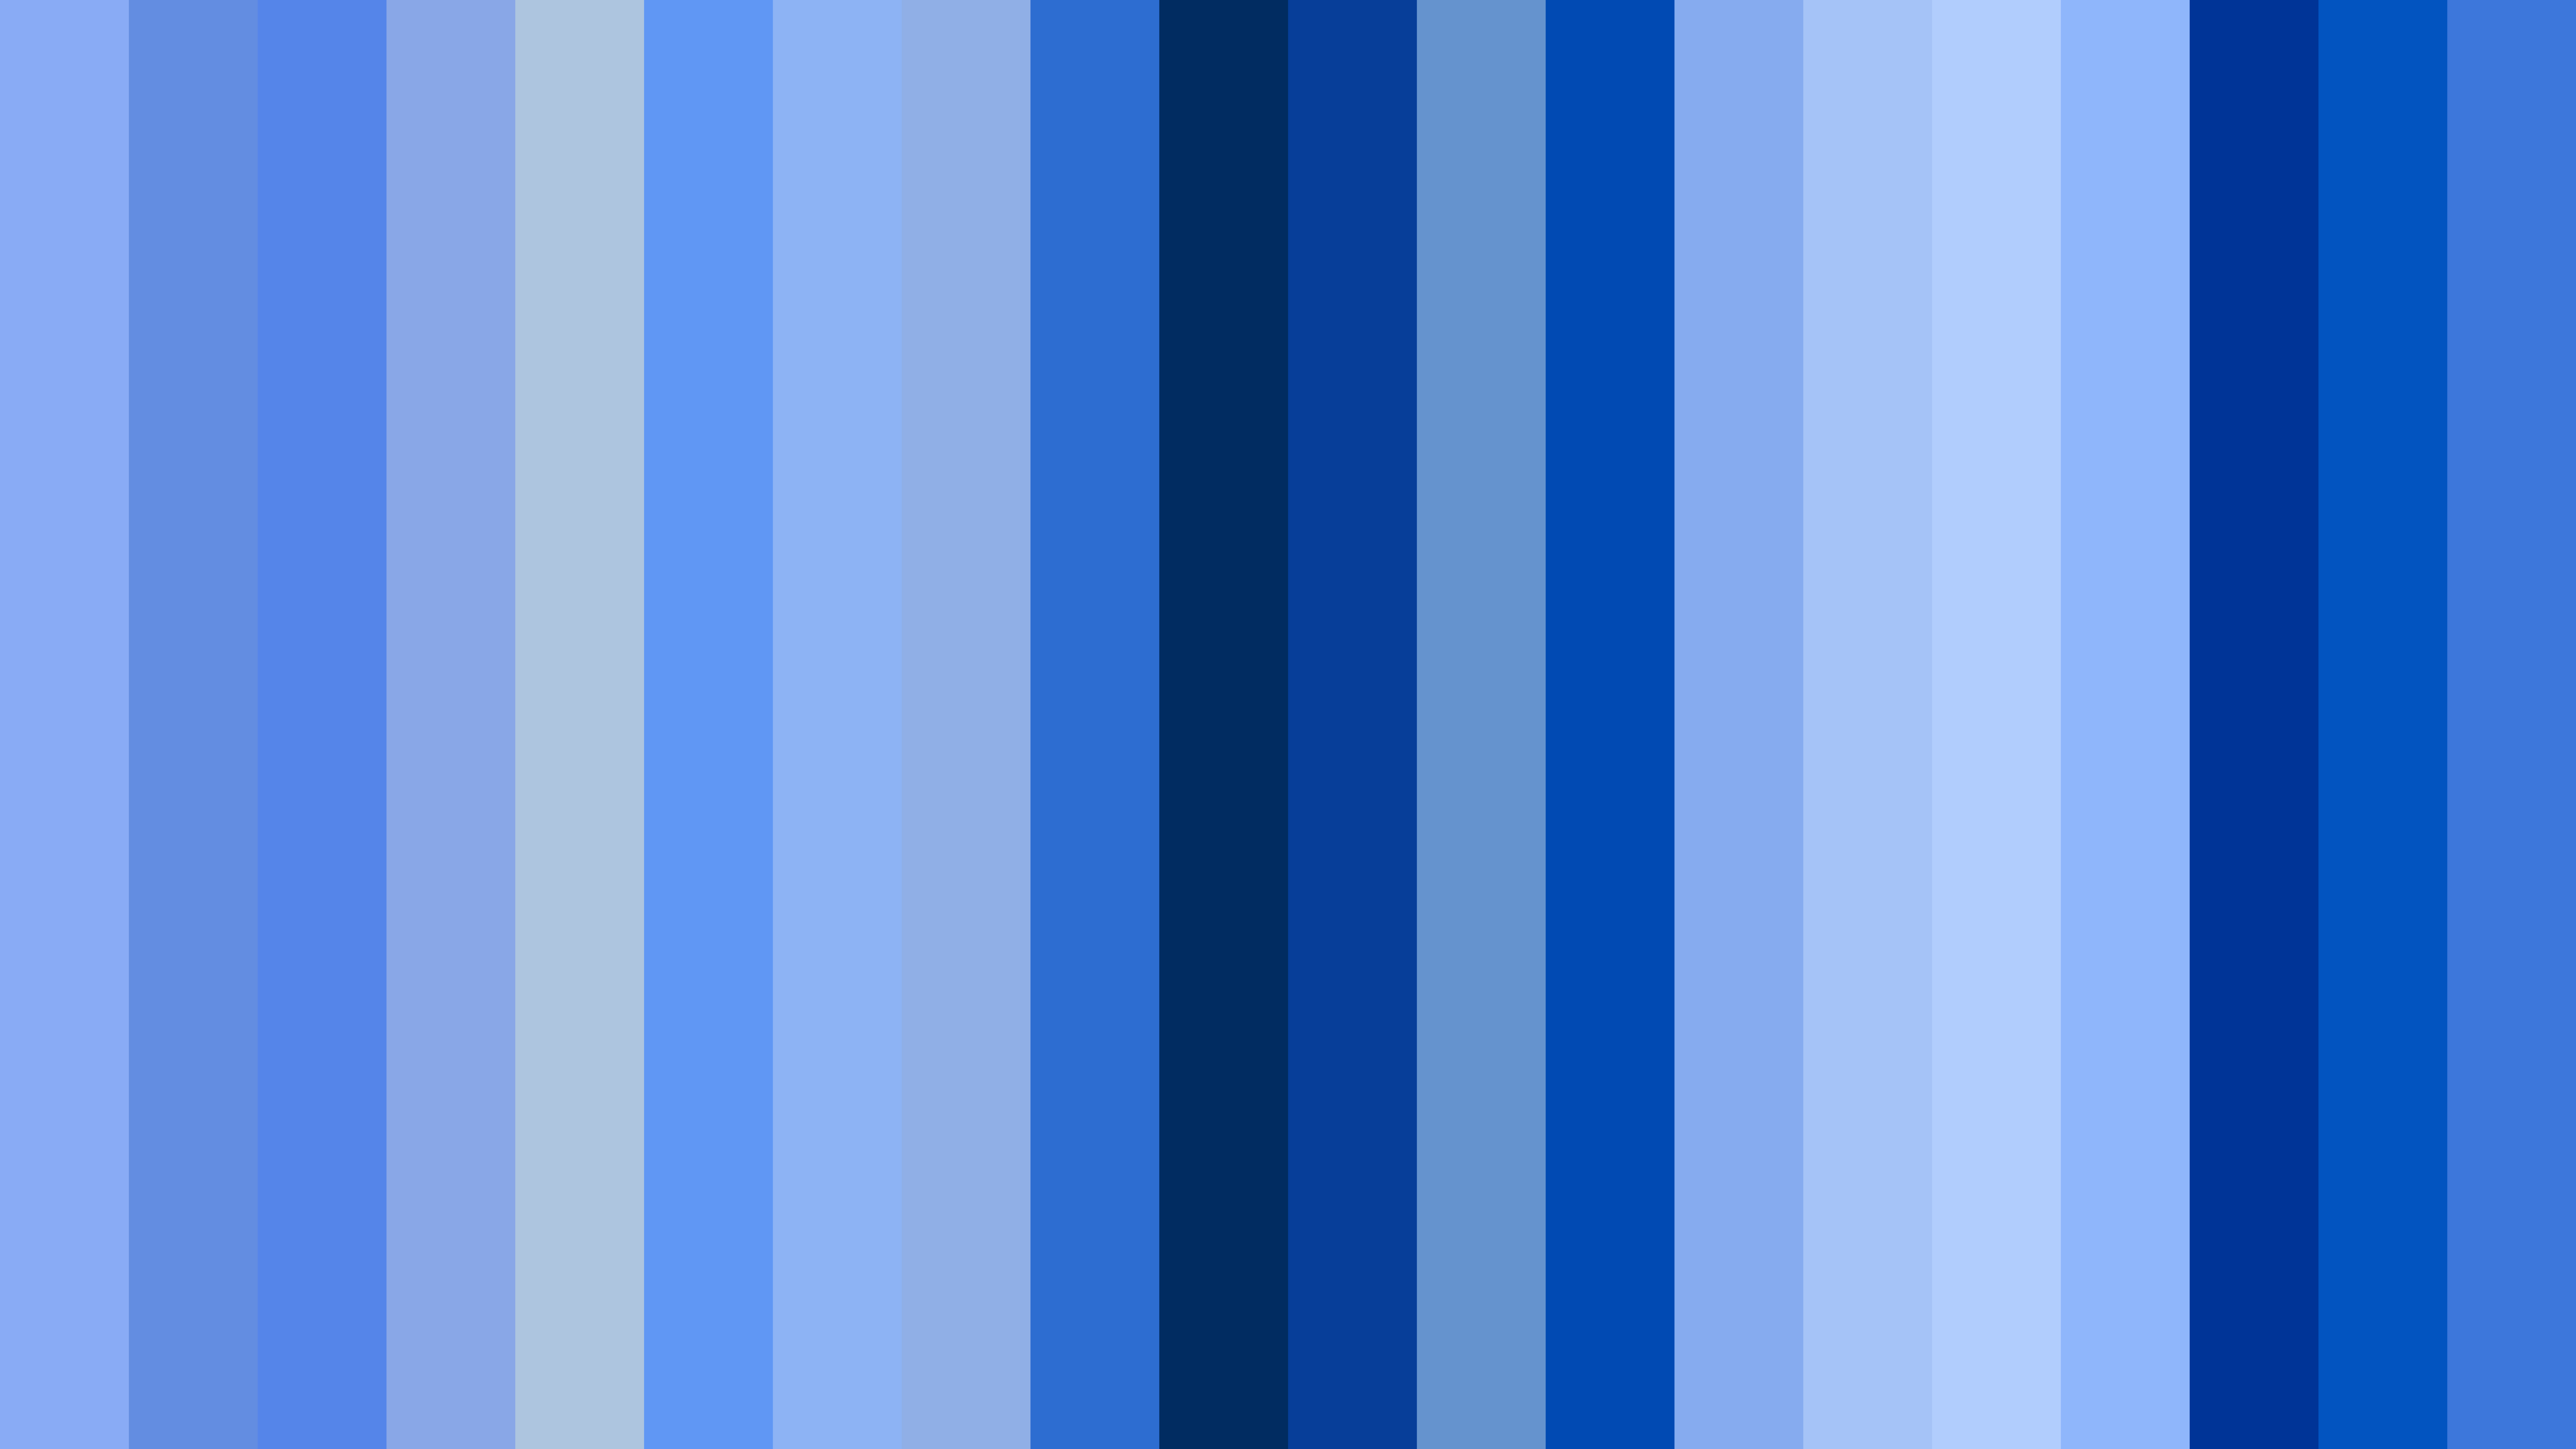 Dark Blue Stripes Background | peacecommission.kdsg.gov.ng